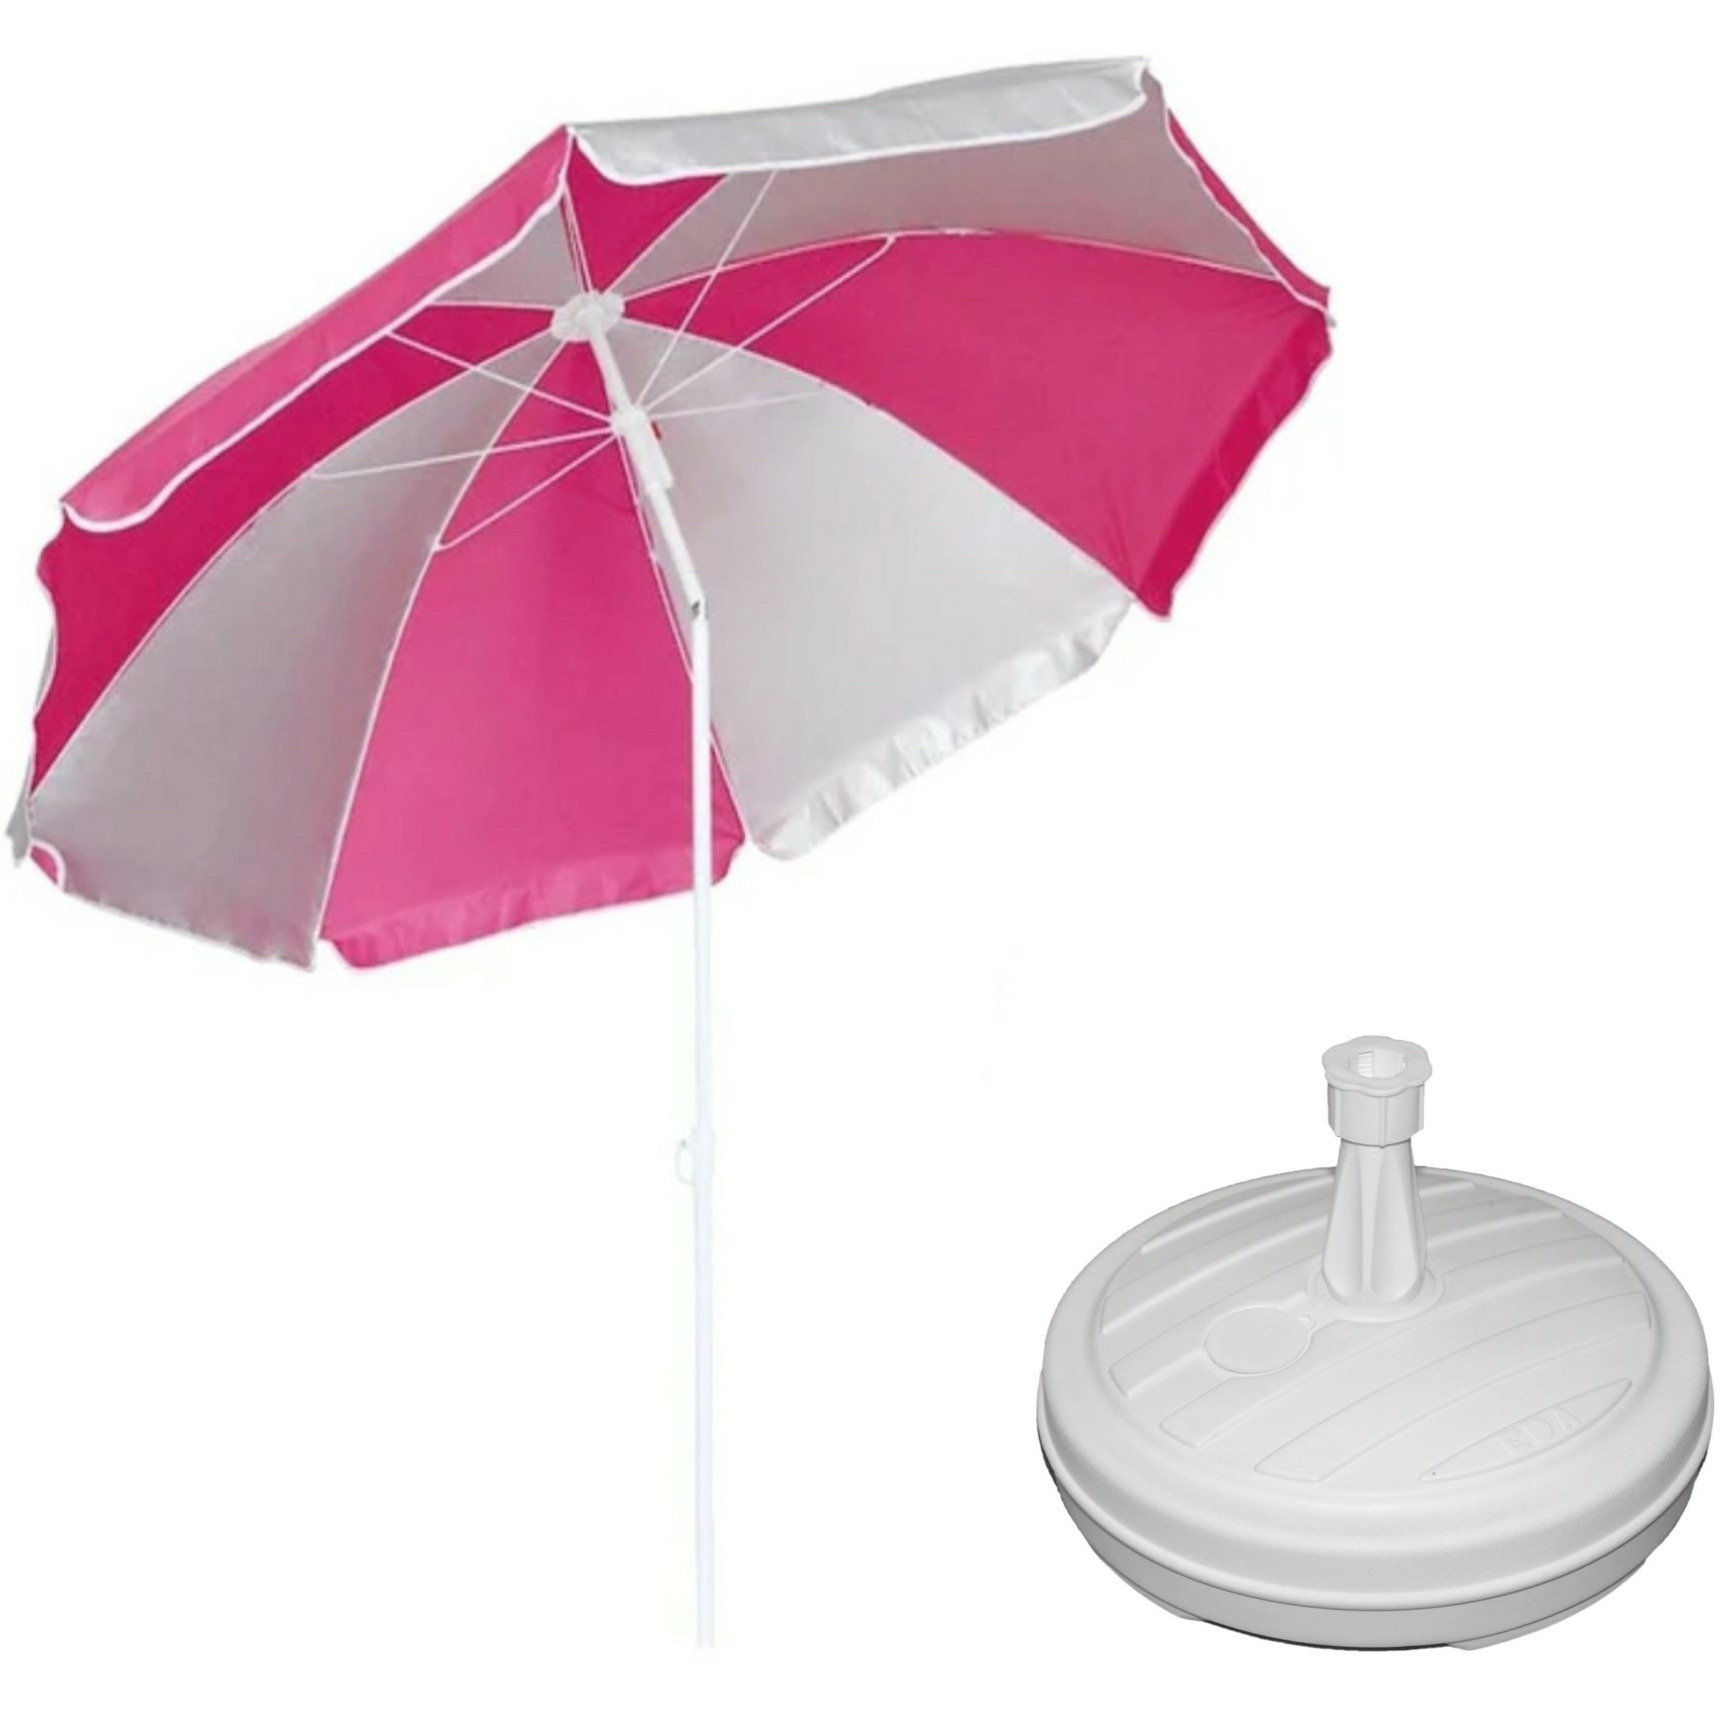 Parasol roze-wit D120 cm incl. draagtas parasolvoet 42 cm